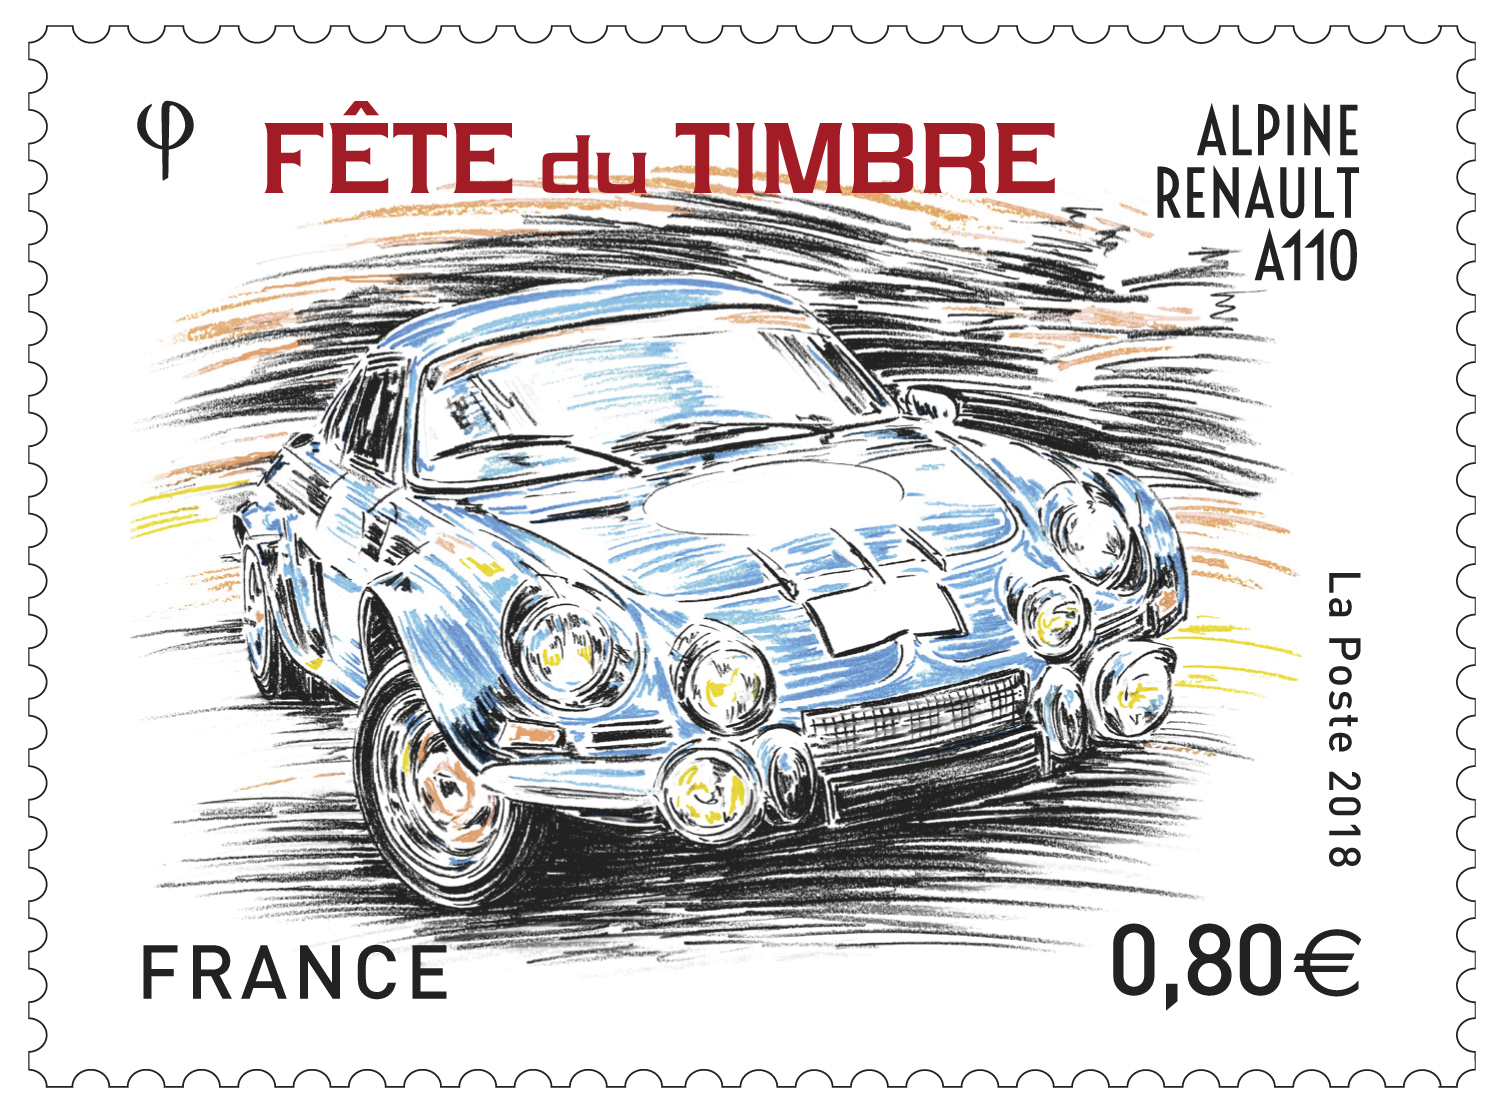 Fête du Timbre - Alpine Renault A110